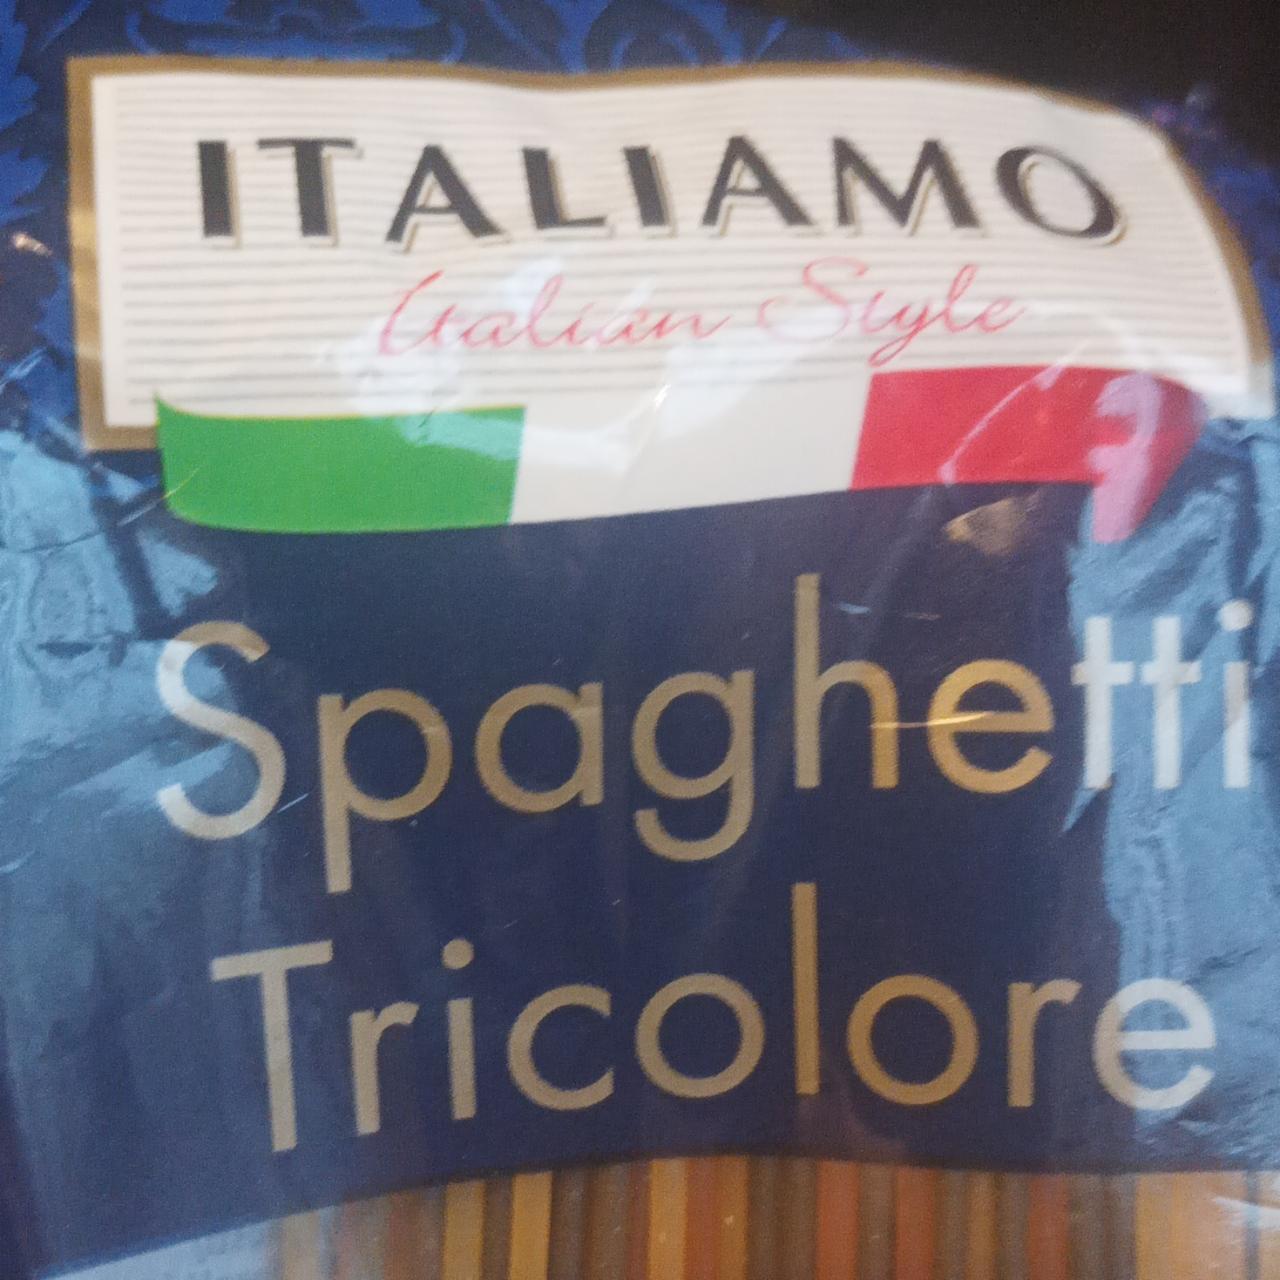 Zdjęcia - Spaghetti Tricolore Italiamo